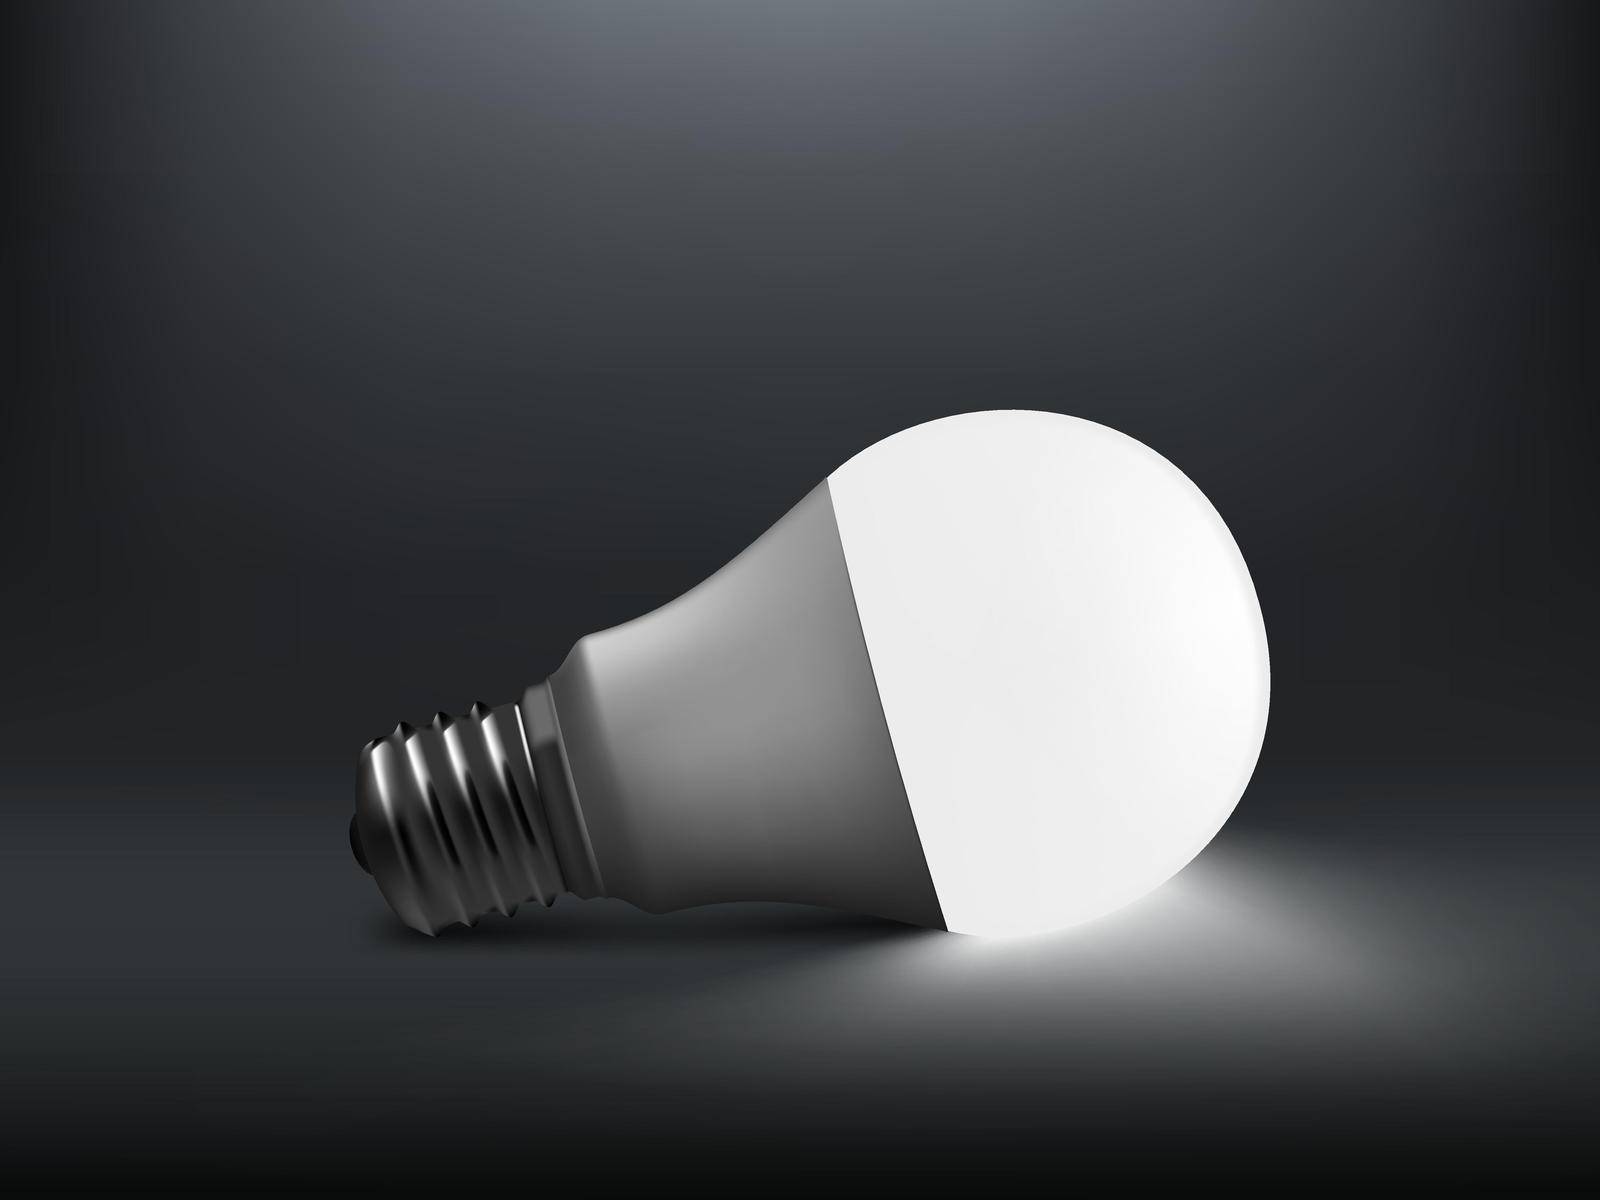 3D LED Light Bulb With Shadow On Floor. EPS10 Vector